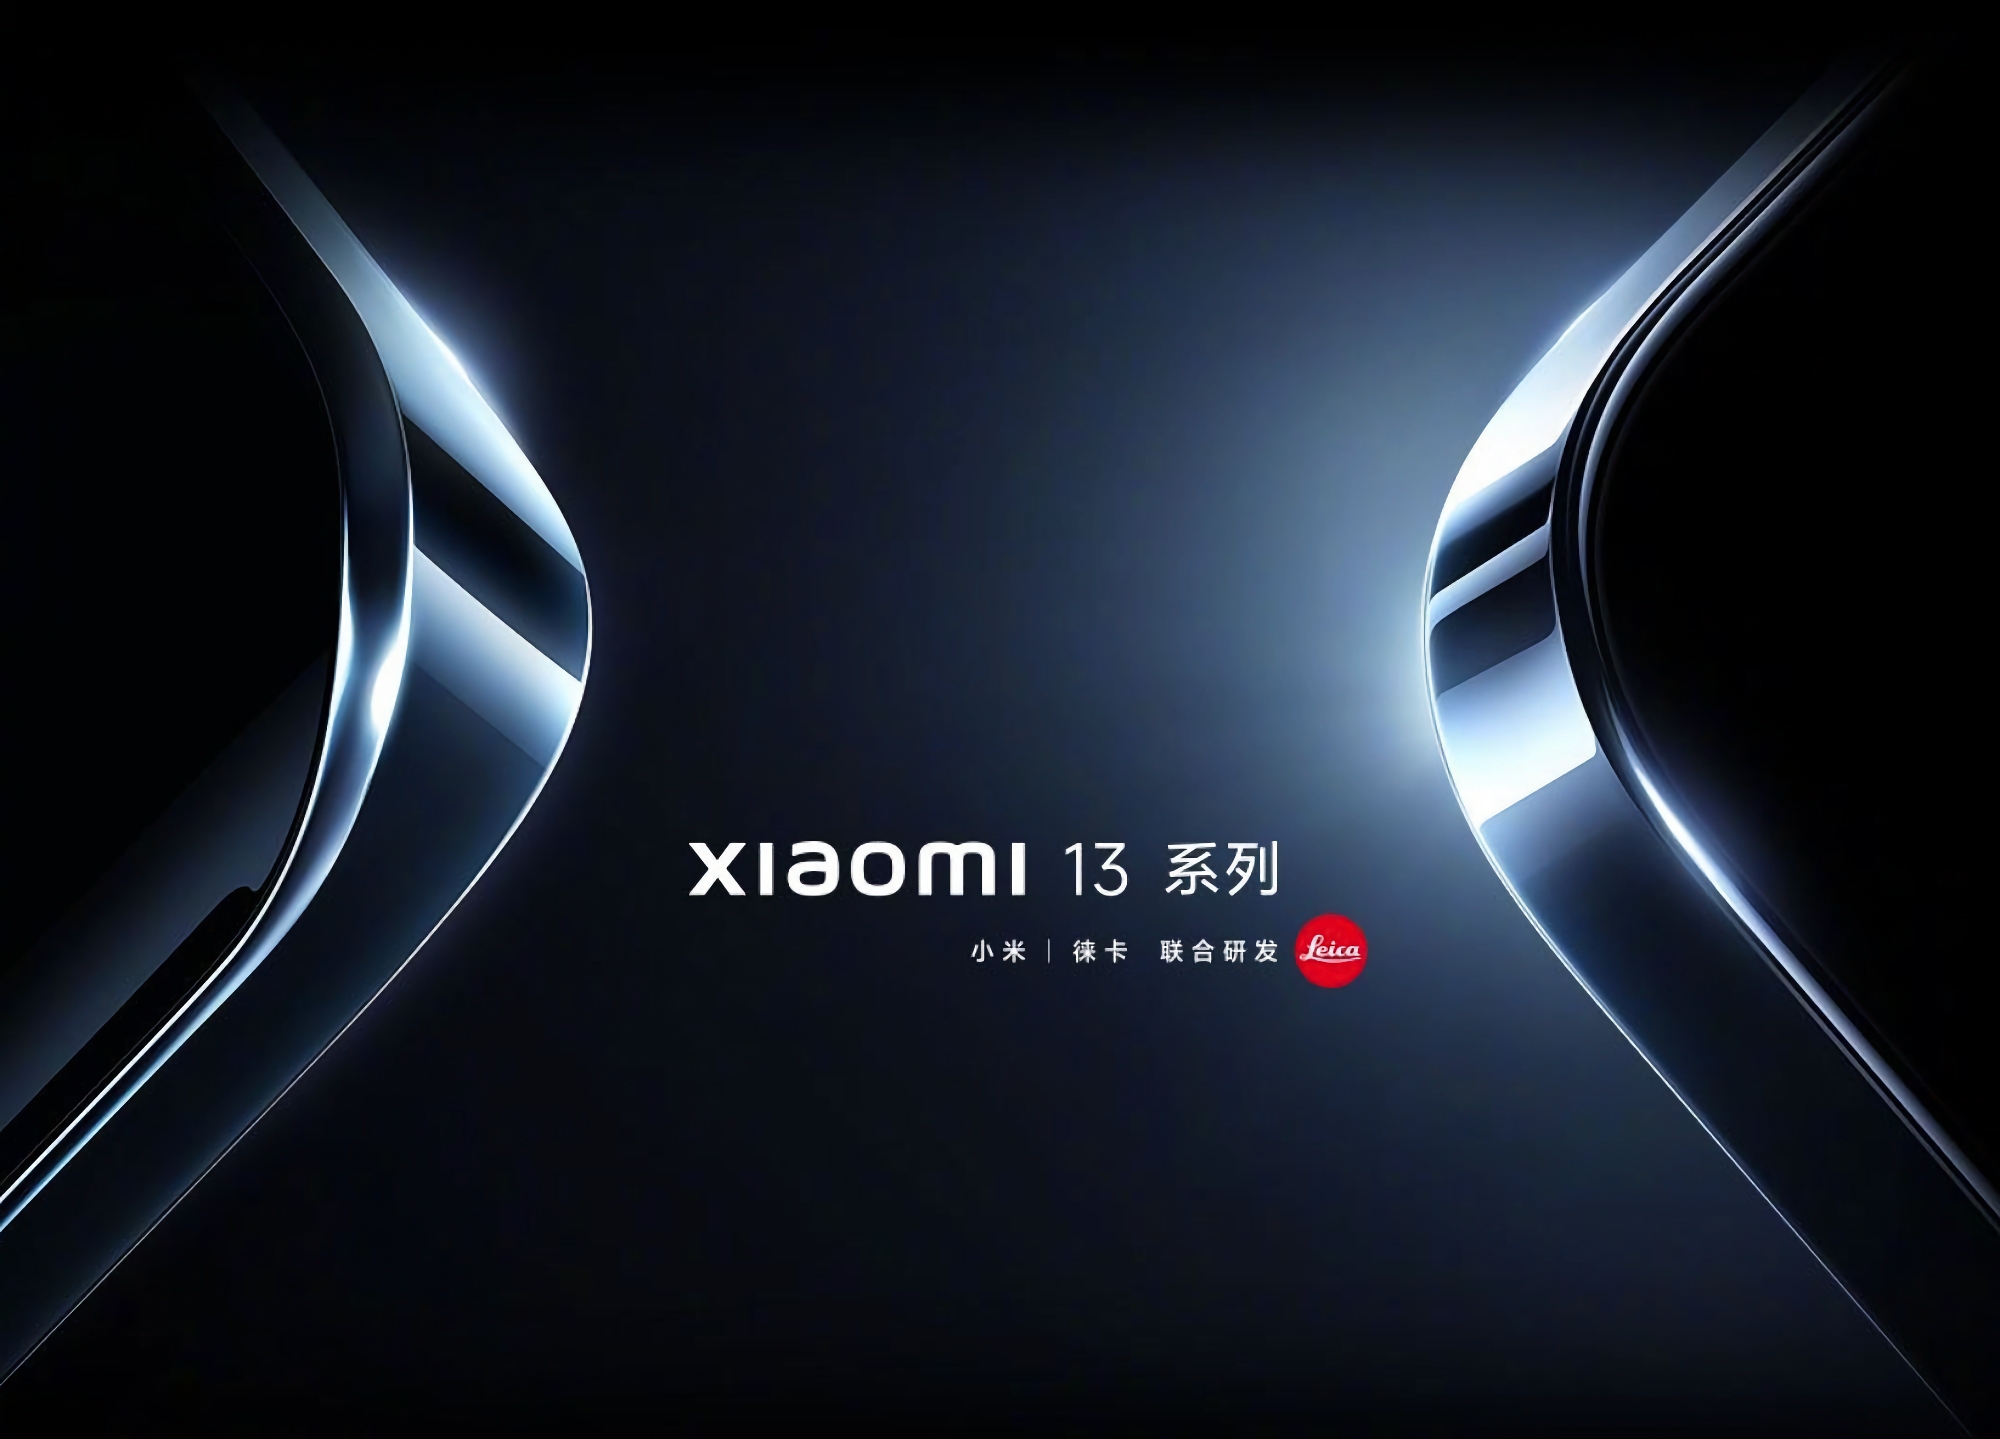 Xiaomi hat die Präsentation der Flaggschiffe Xiaomi 13 und Xiaomi 13 Pro wegen des Todes des ehemaligen chinesischen Führers Jiang Zemin verschoben